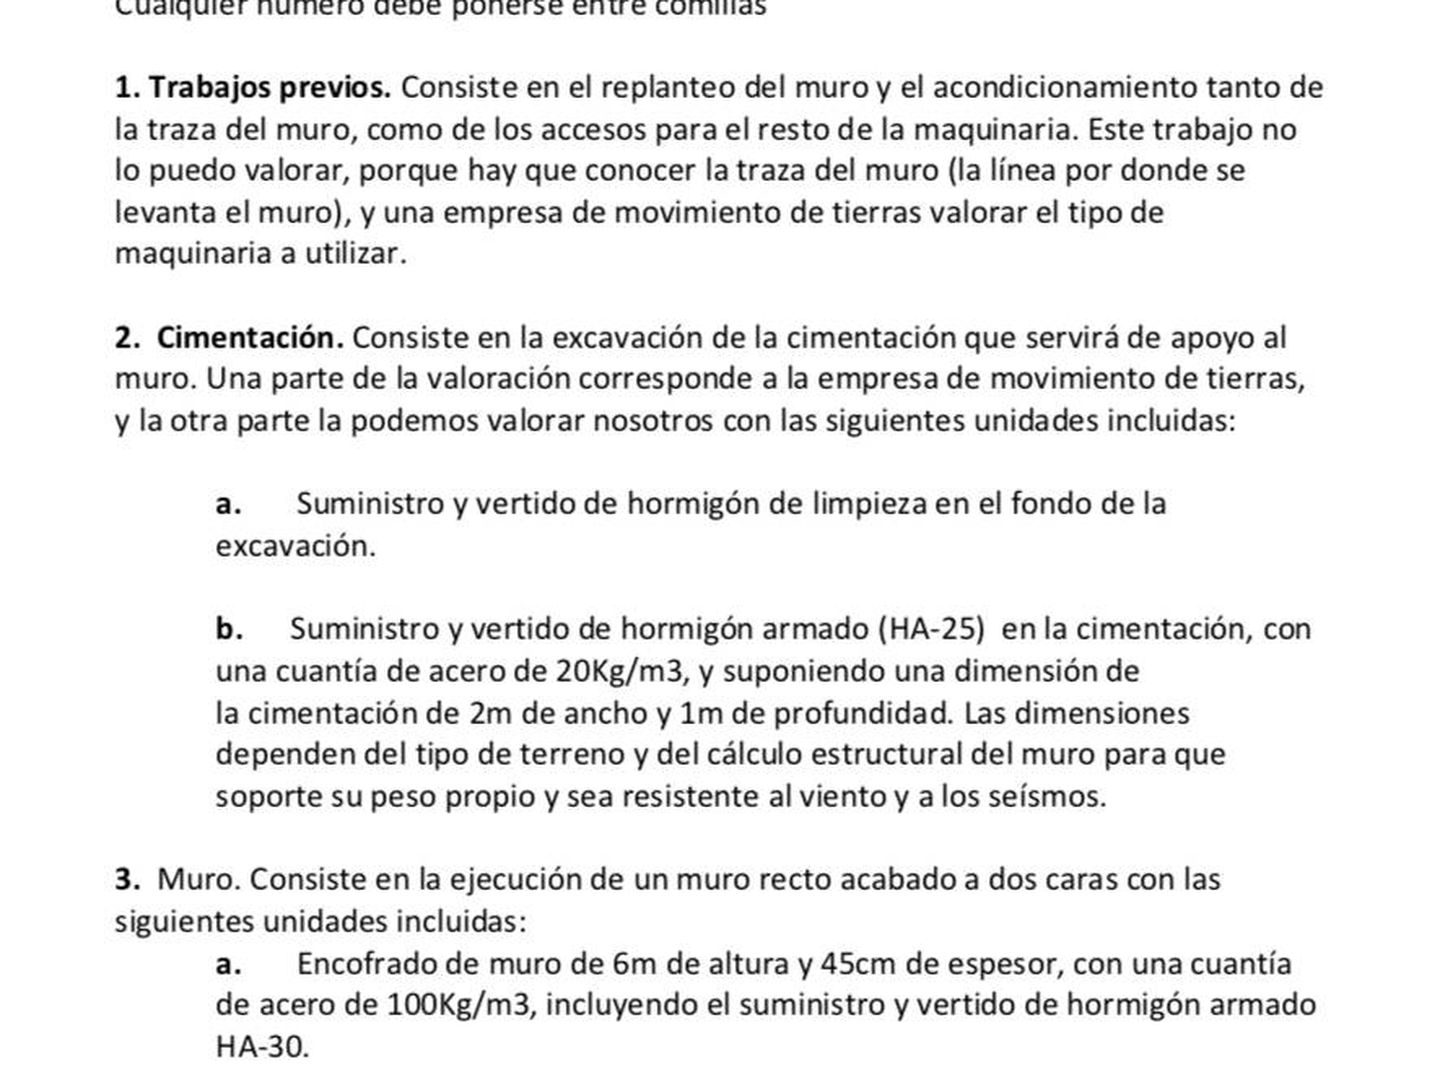 Cálculos básicos de la empresa Galodasa con sede en Melilla para la construcción de un muro en la frontera. Pinche en la imagen para leerlo en detalle